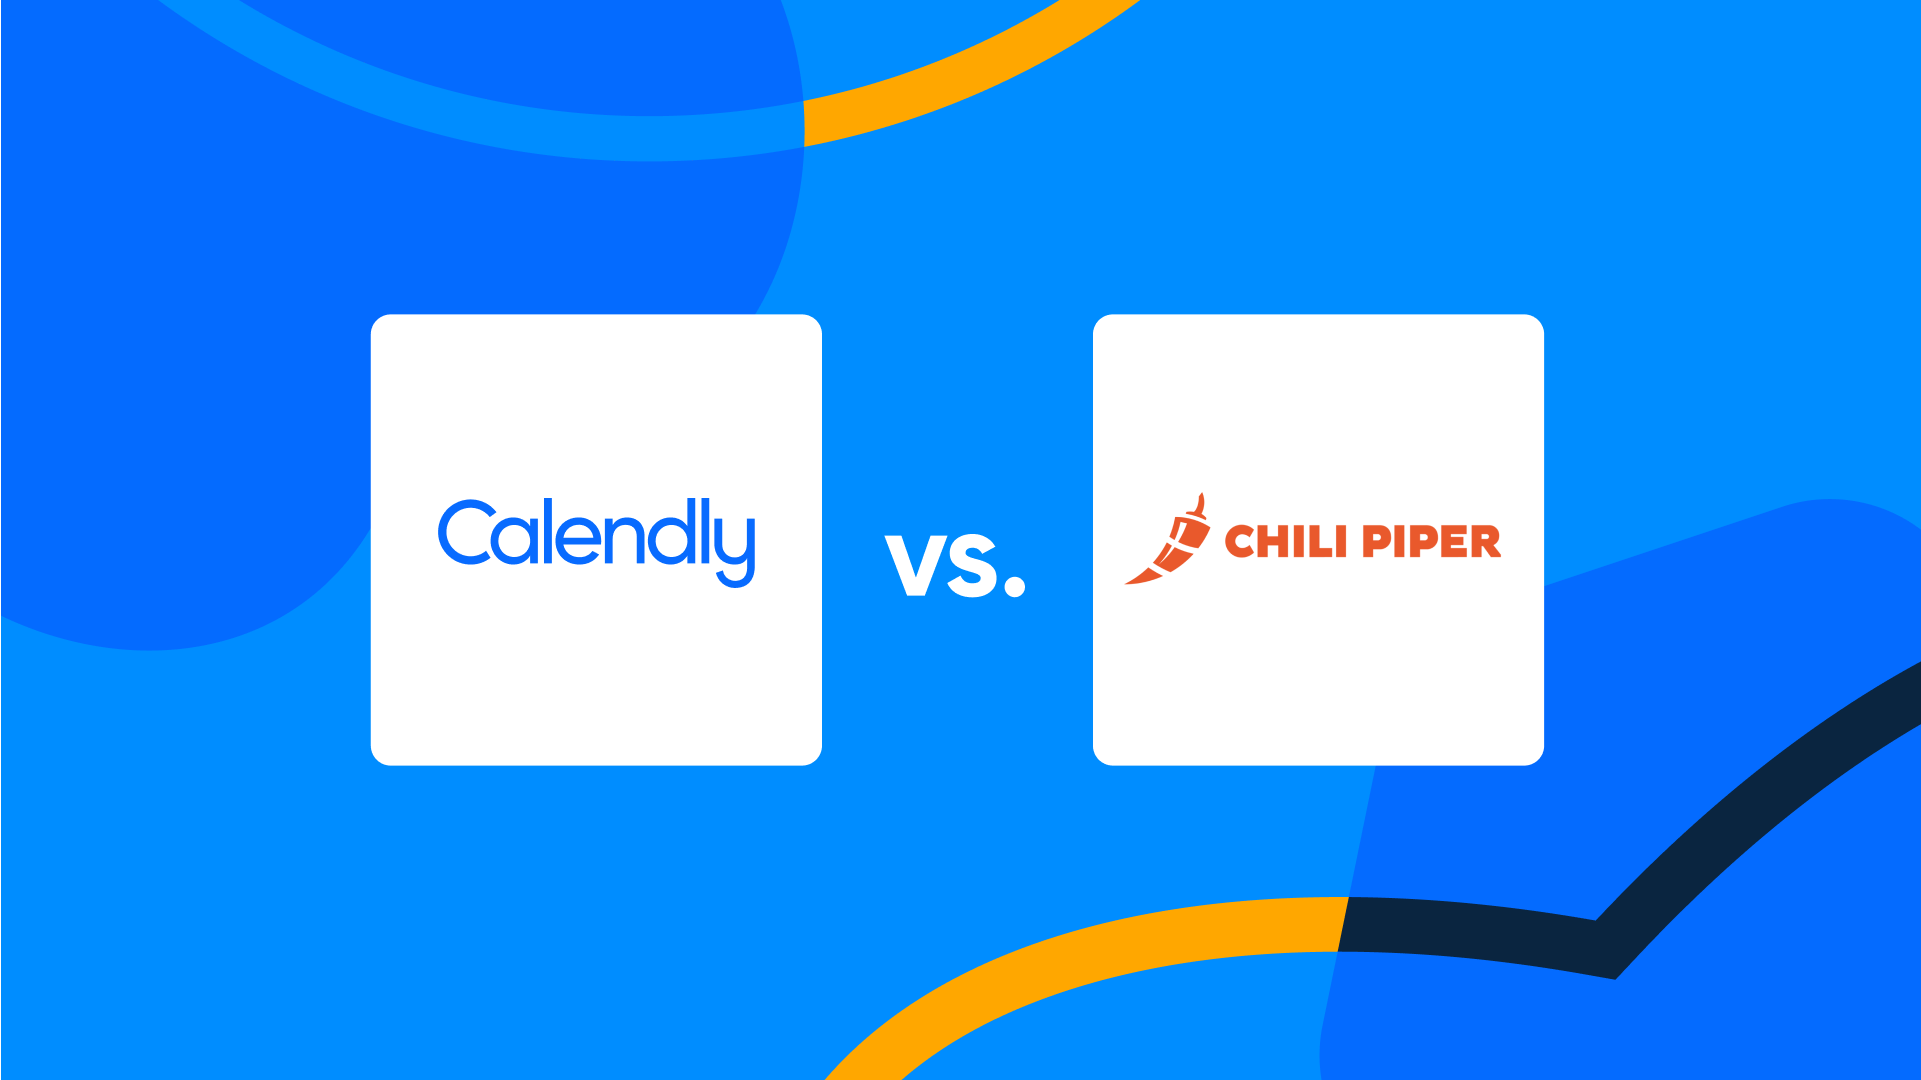 Calendly vs. Chili Piper